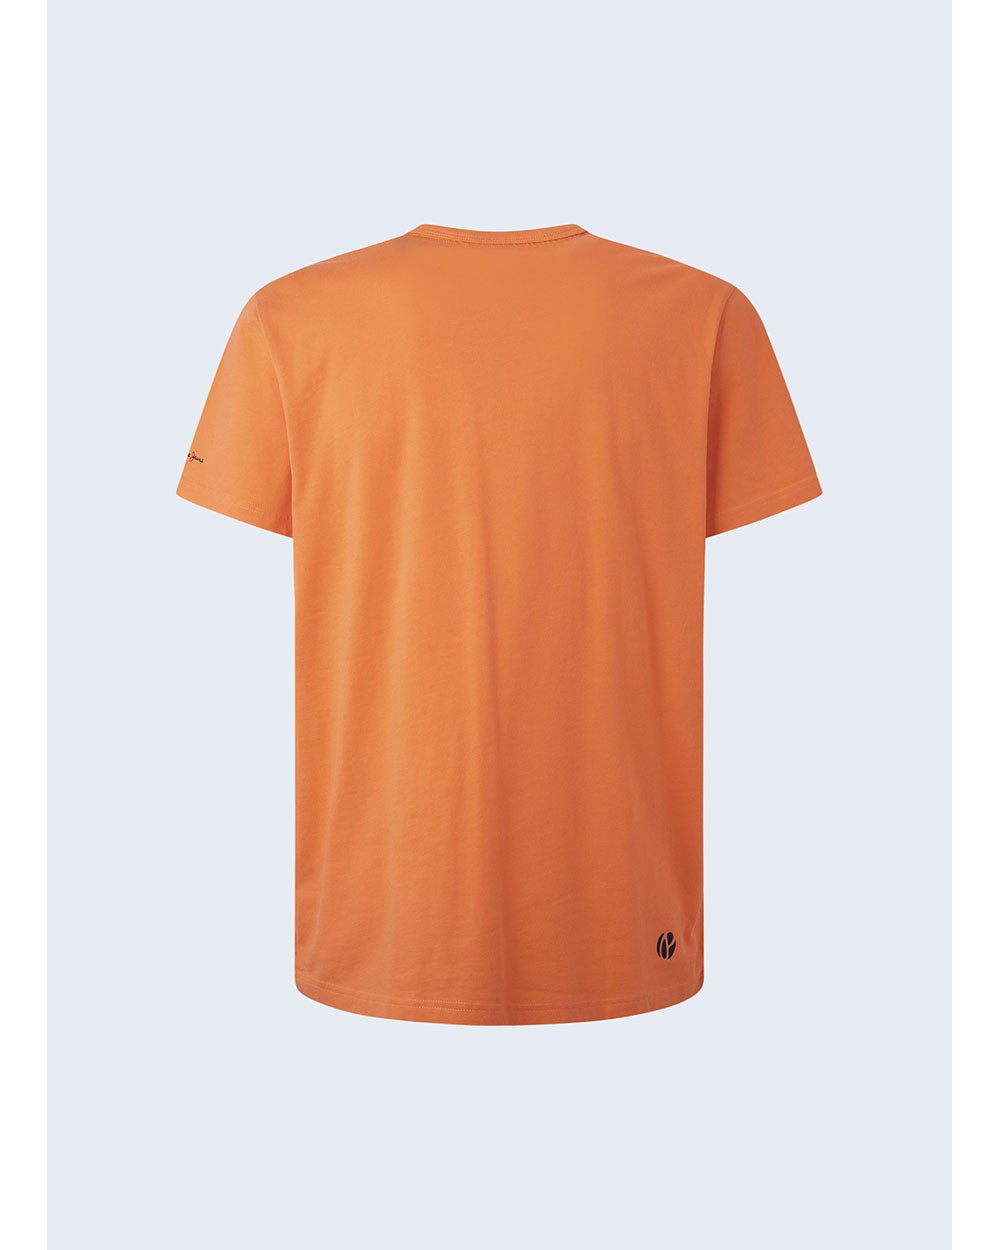 Pepe Jeans PM508697 Men's Squash Orange T-Shirt Vibrant Style & Comfort